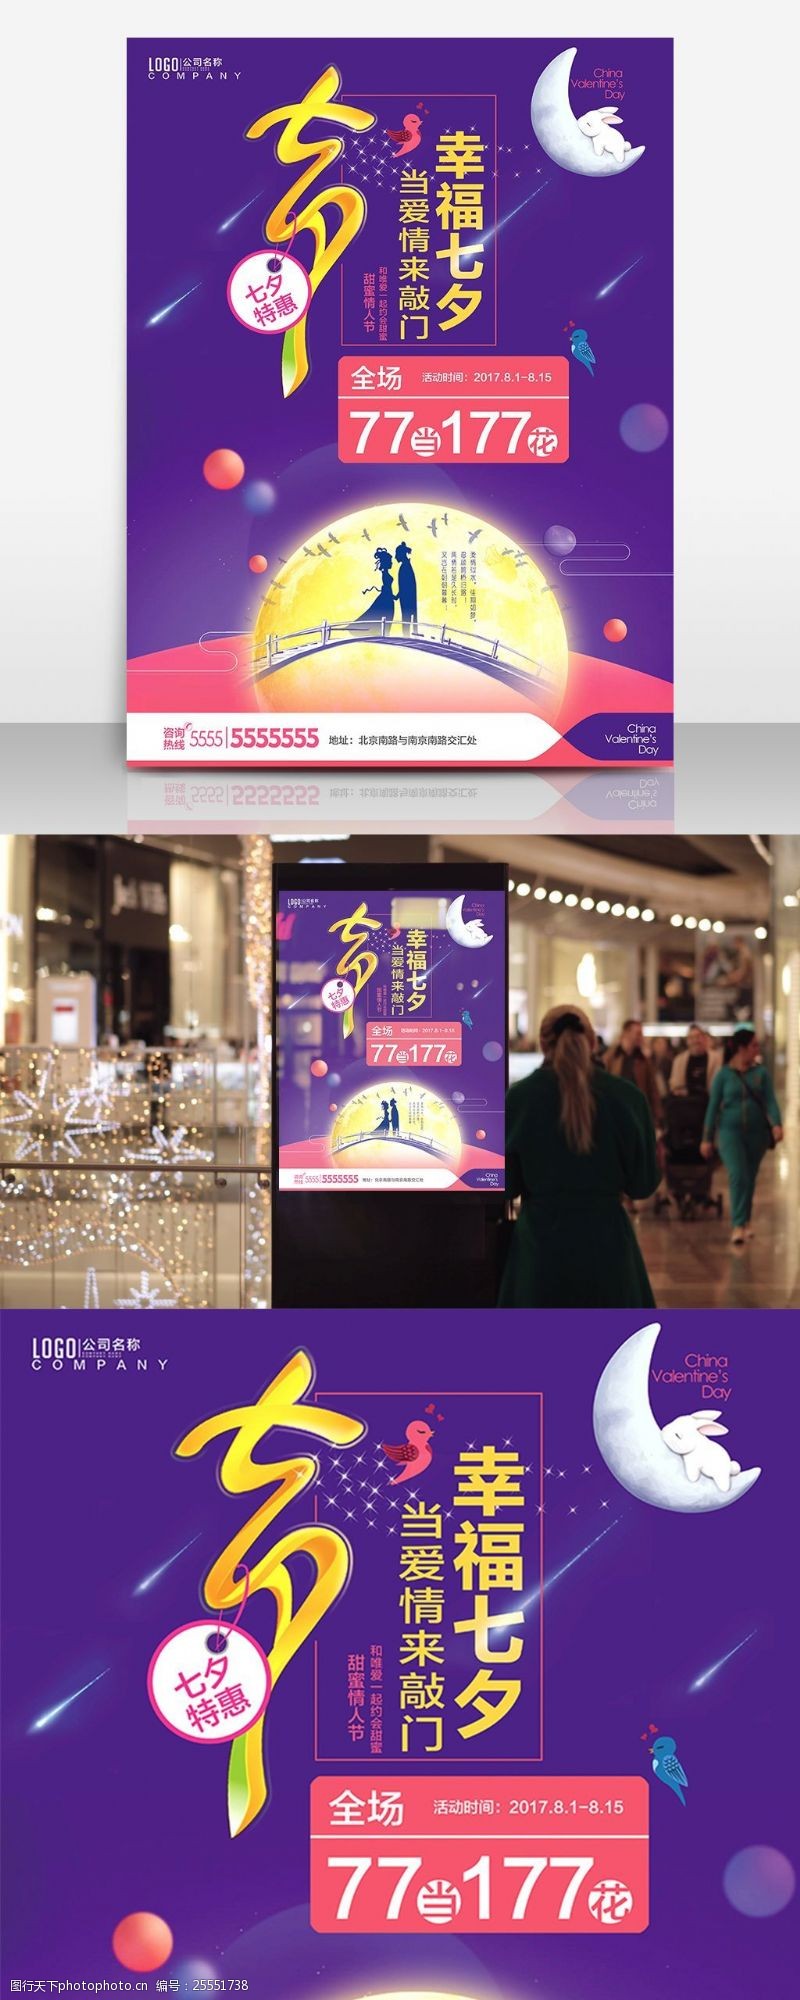 七夕情人节清新紫色促销海报设计